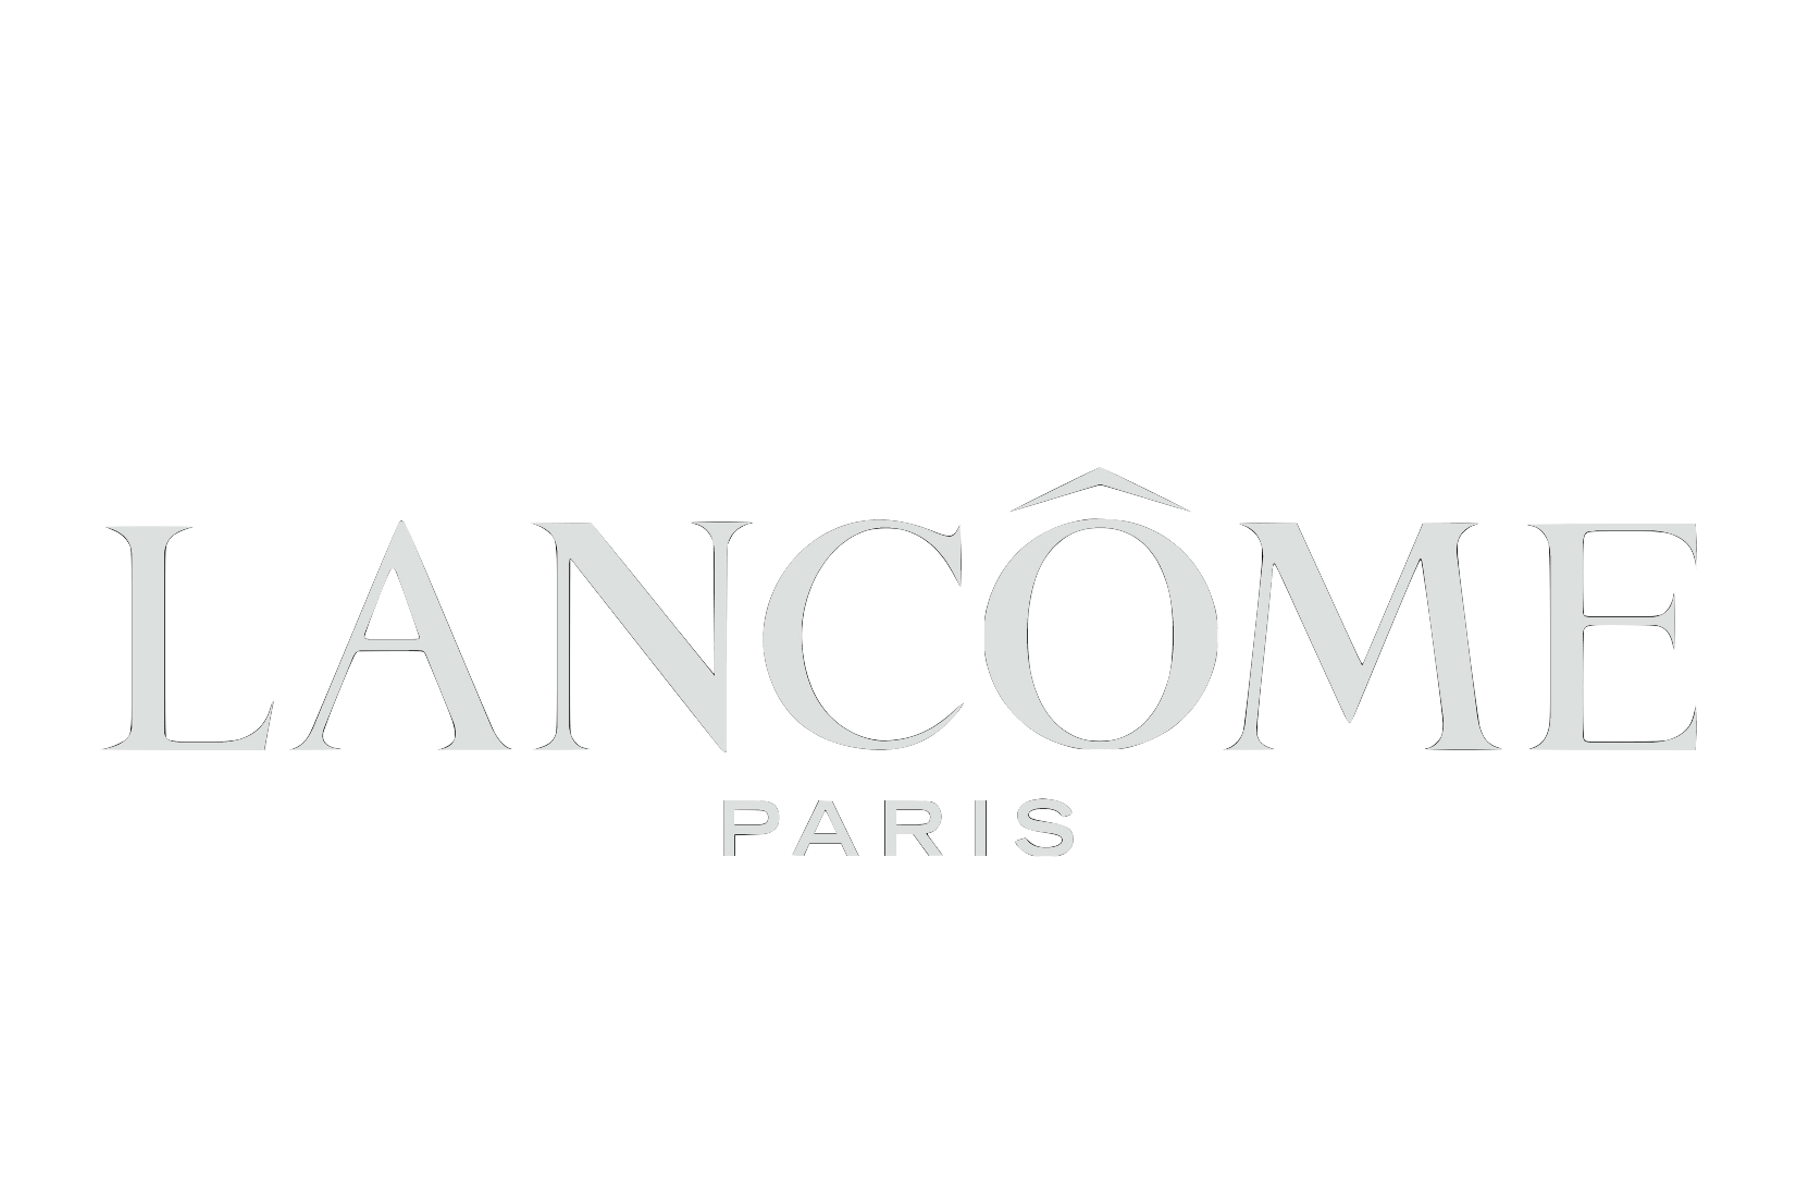 Lancome Paris Logo - LogoDix